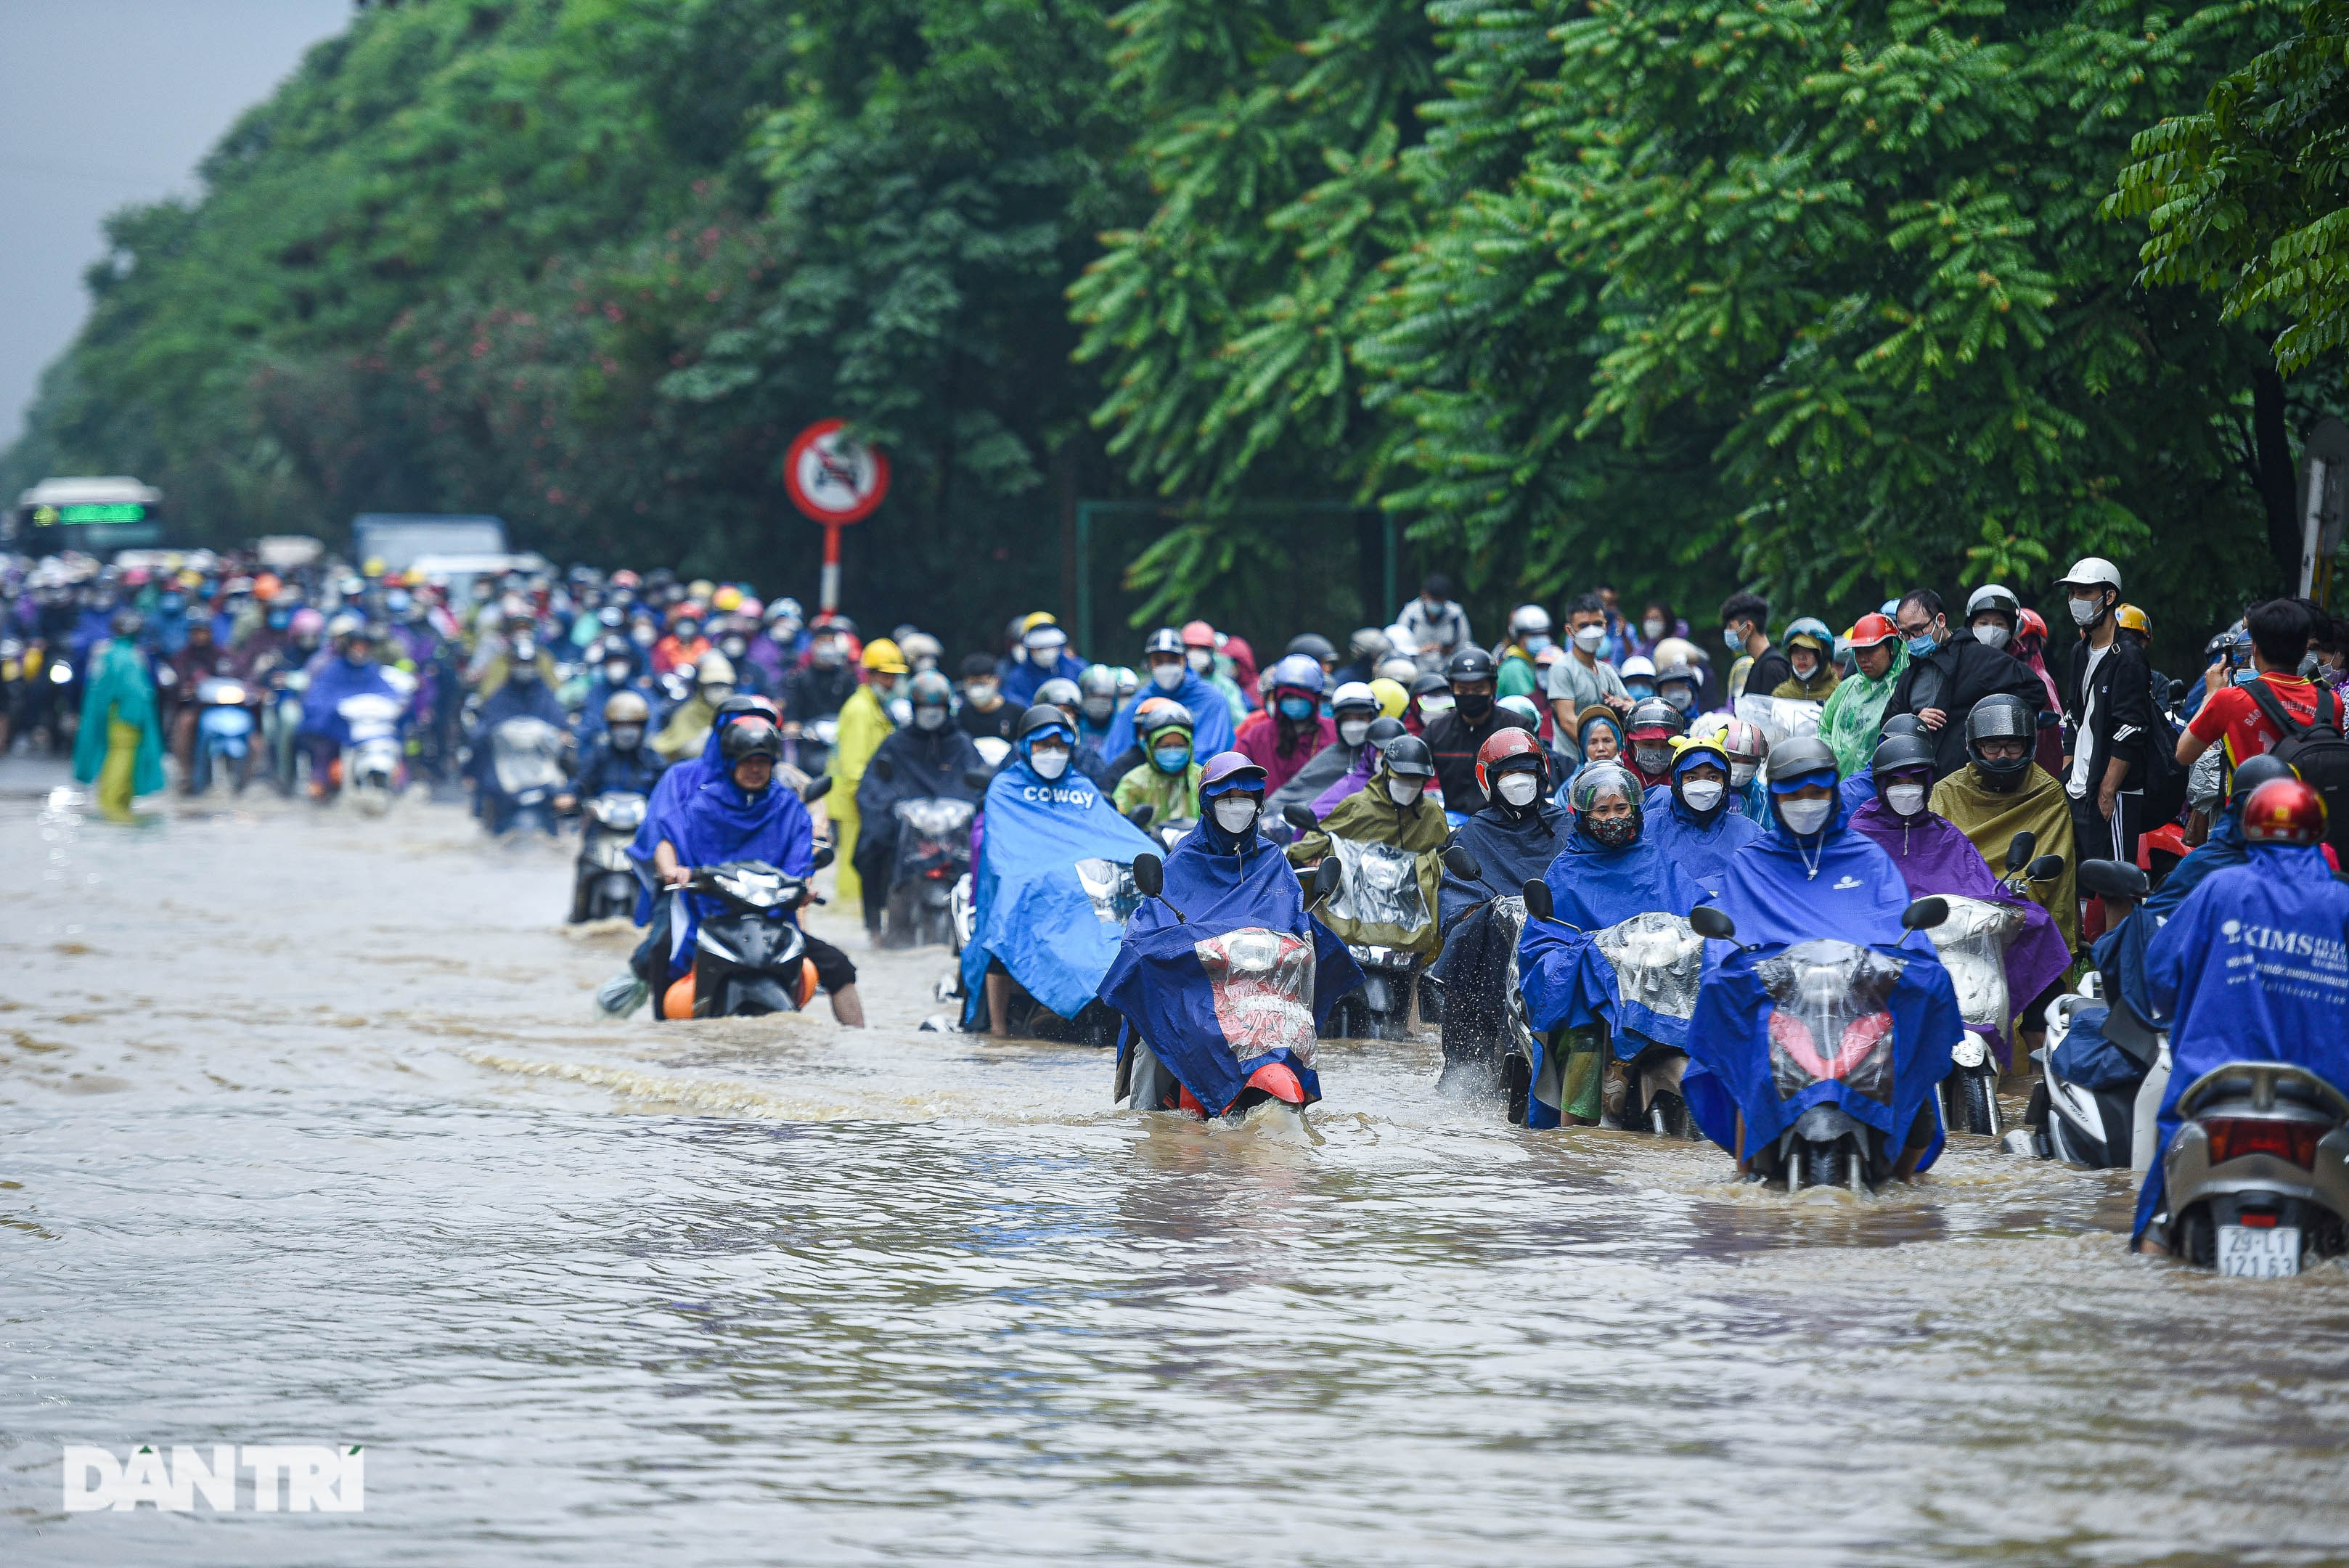 Đường gom đại lộ Thăng Long ngập như sông, đoàn xe ùn tắc cả km - 11